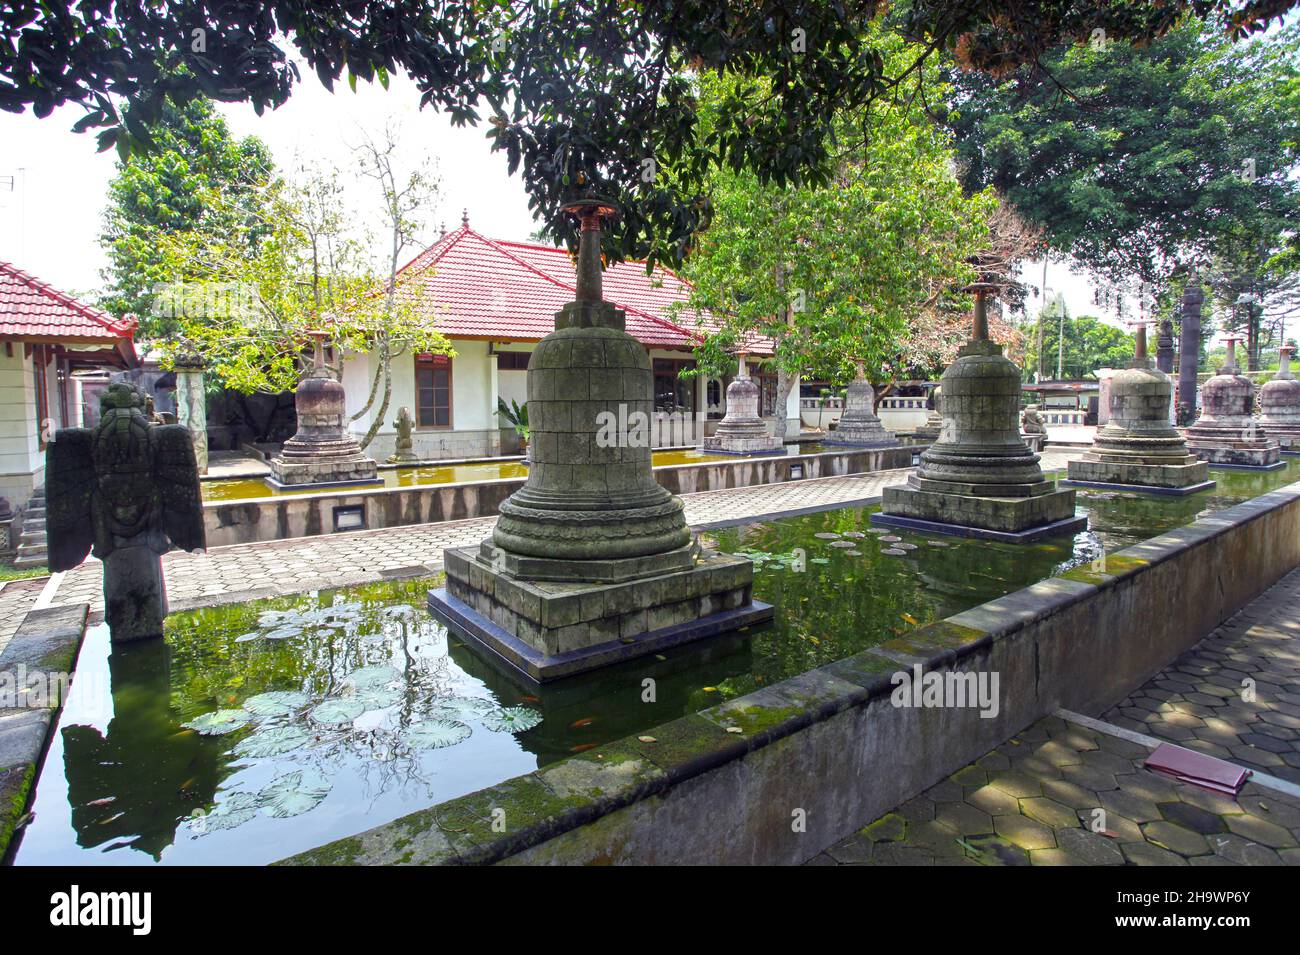 Das buddhistische Mendut-Kloster befindet sich neben dem alten Mendut-Tempel aus dem 9th. Jahrhundert n. Chr. in Zentral-Java, Indonesien. Stockfoto